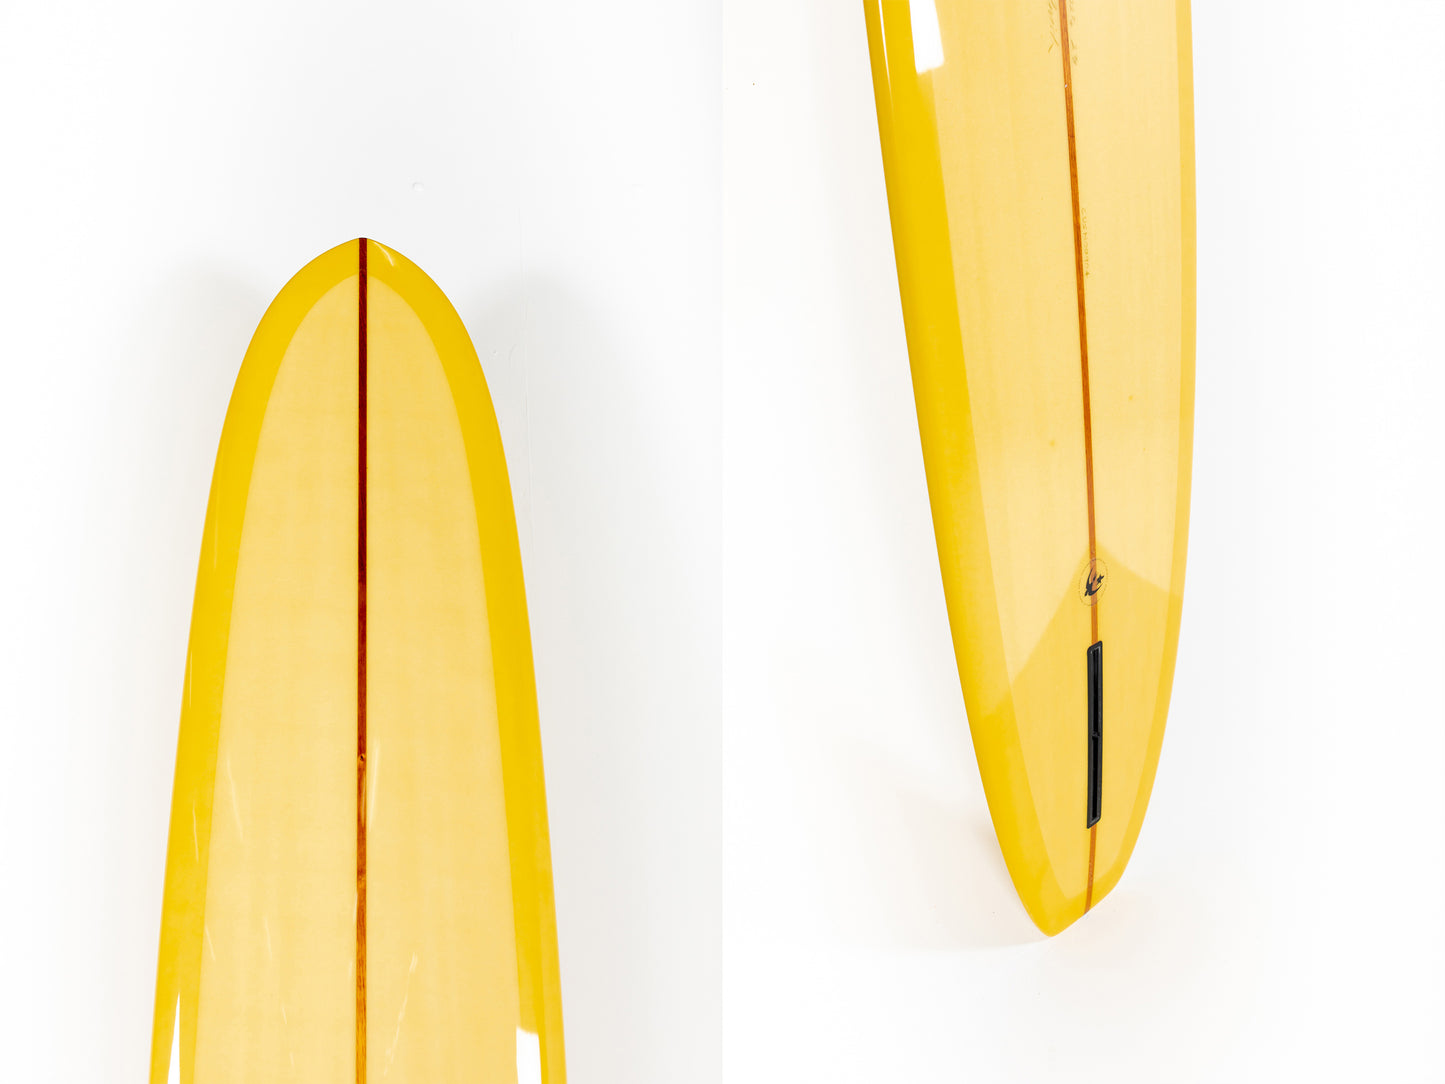 PUKAS SURF SHOP